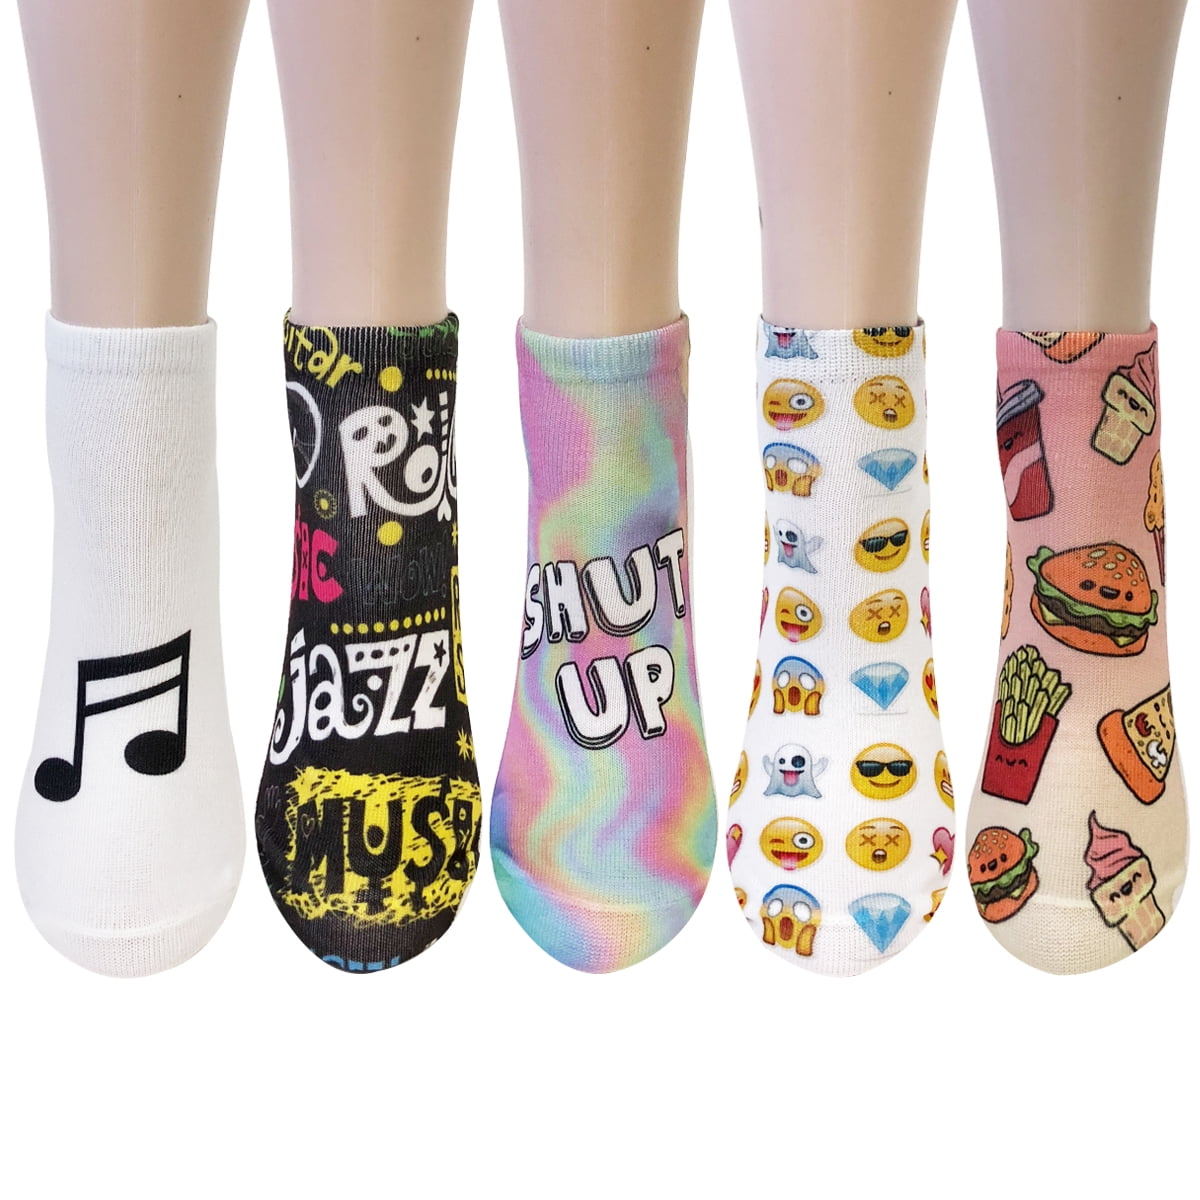 Topivot Women Girls Funny Socks,Crazy Novelty Ankle Socks 3D Printed Low Cut Socks